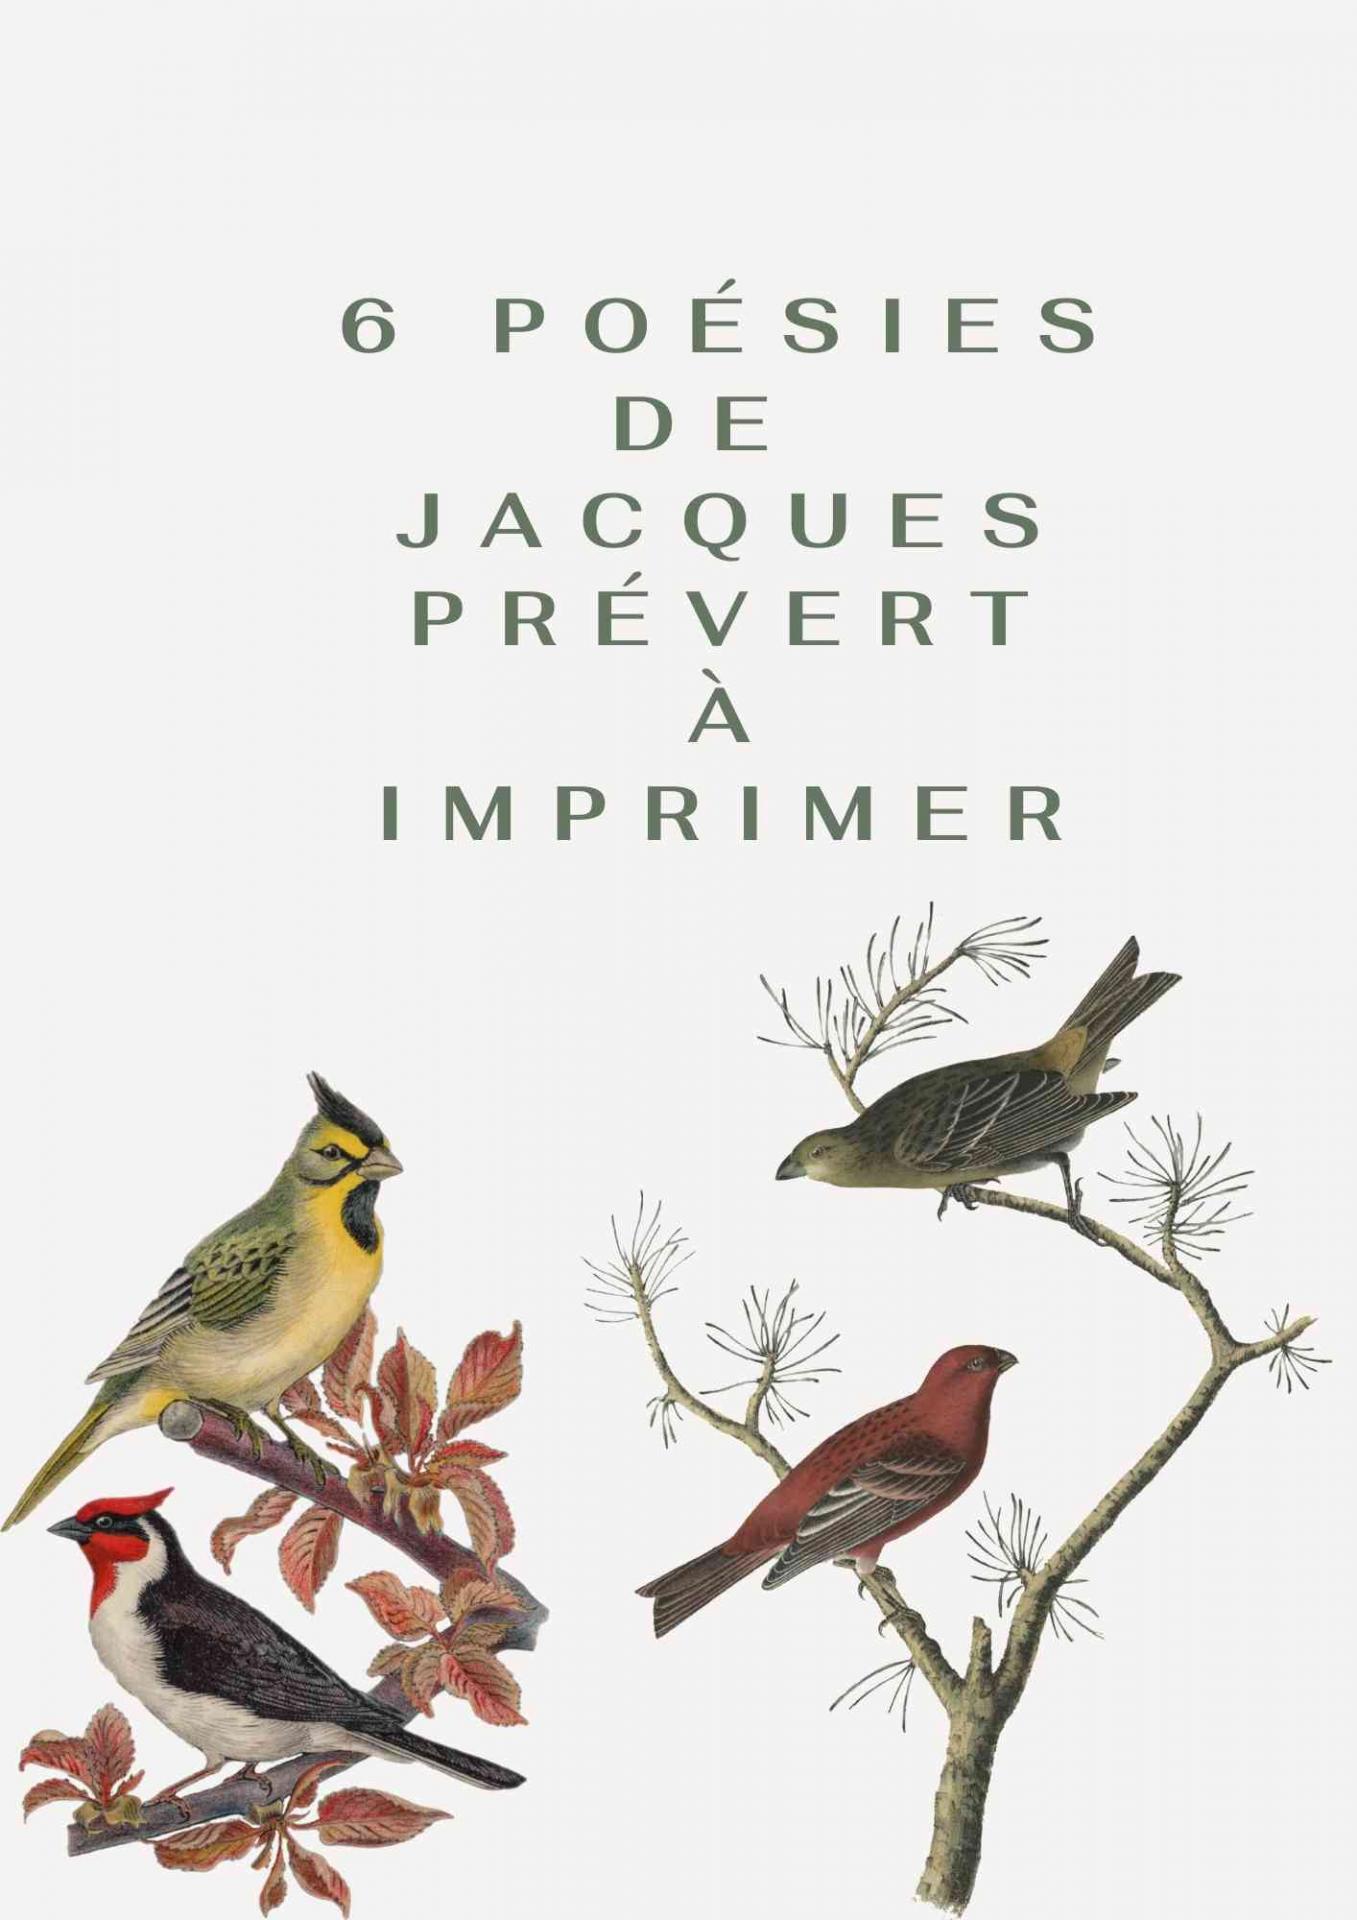 6 poesies de jacques prevert a imprimer